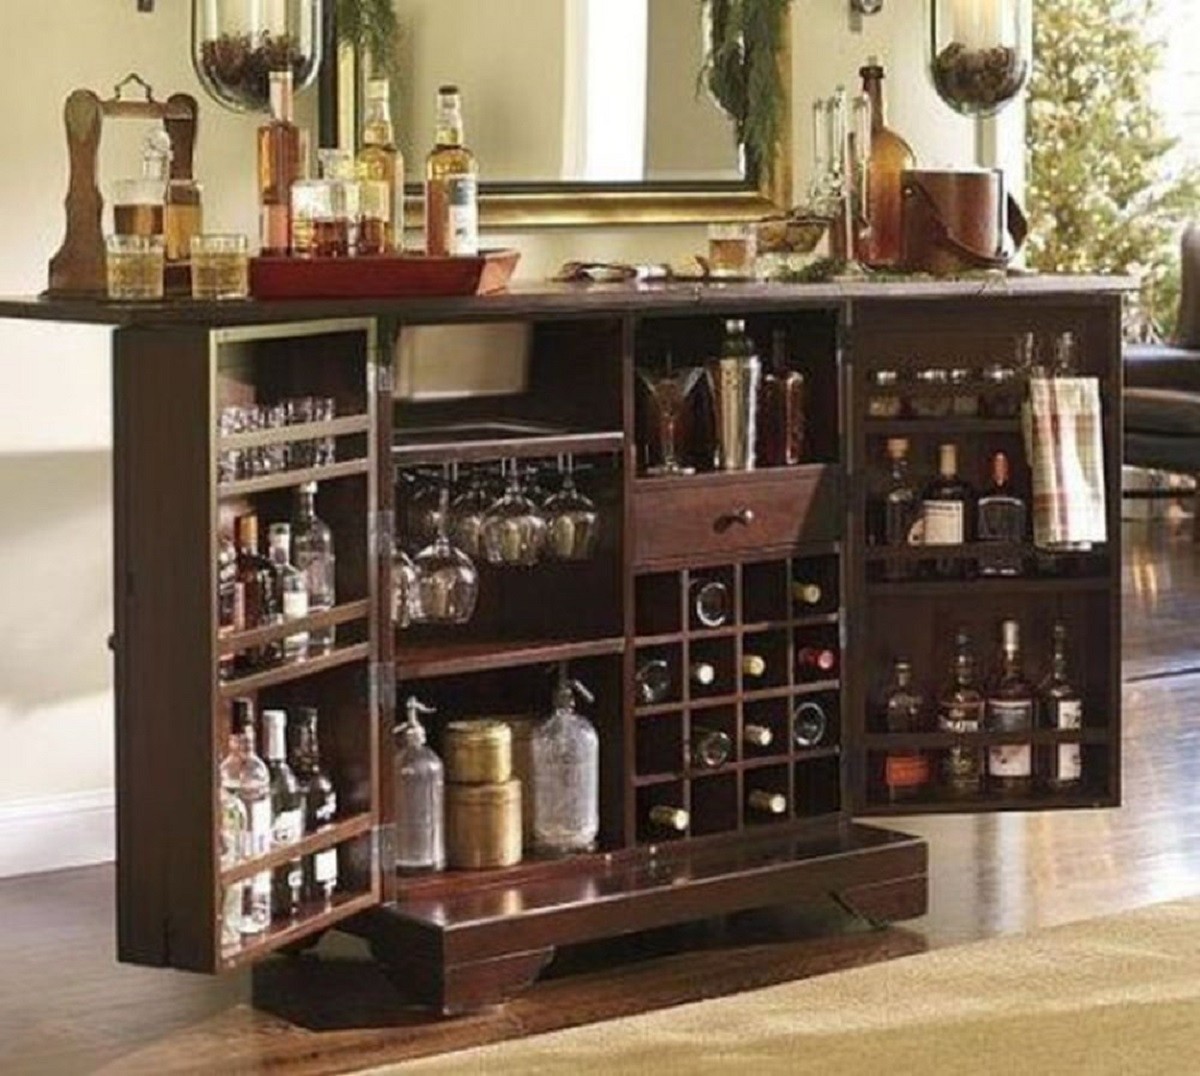 Vintage dry bar cabinet